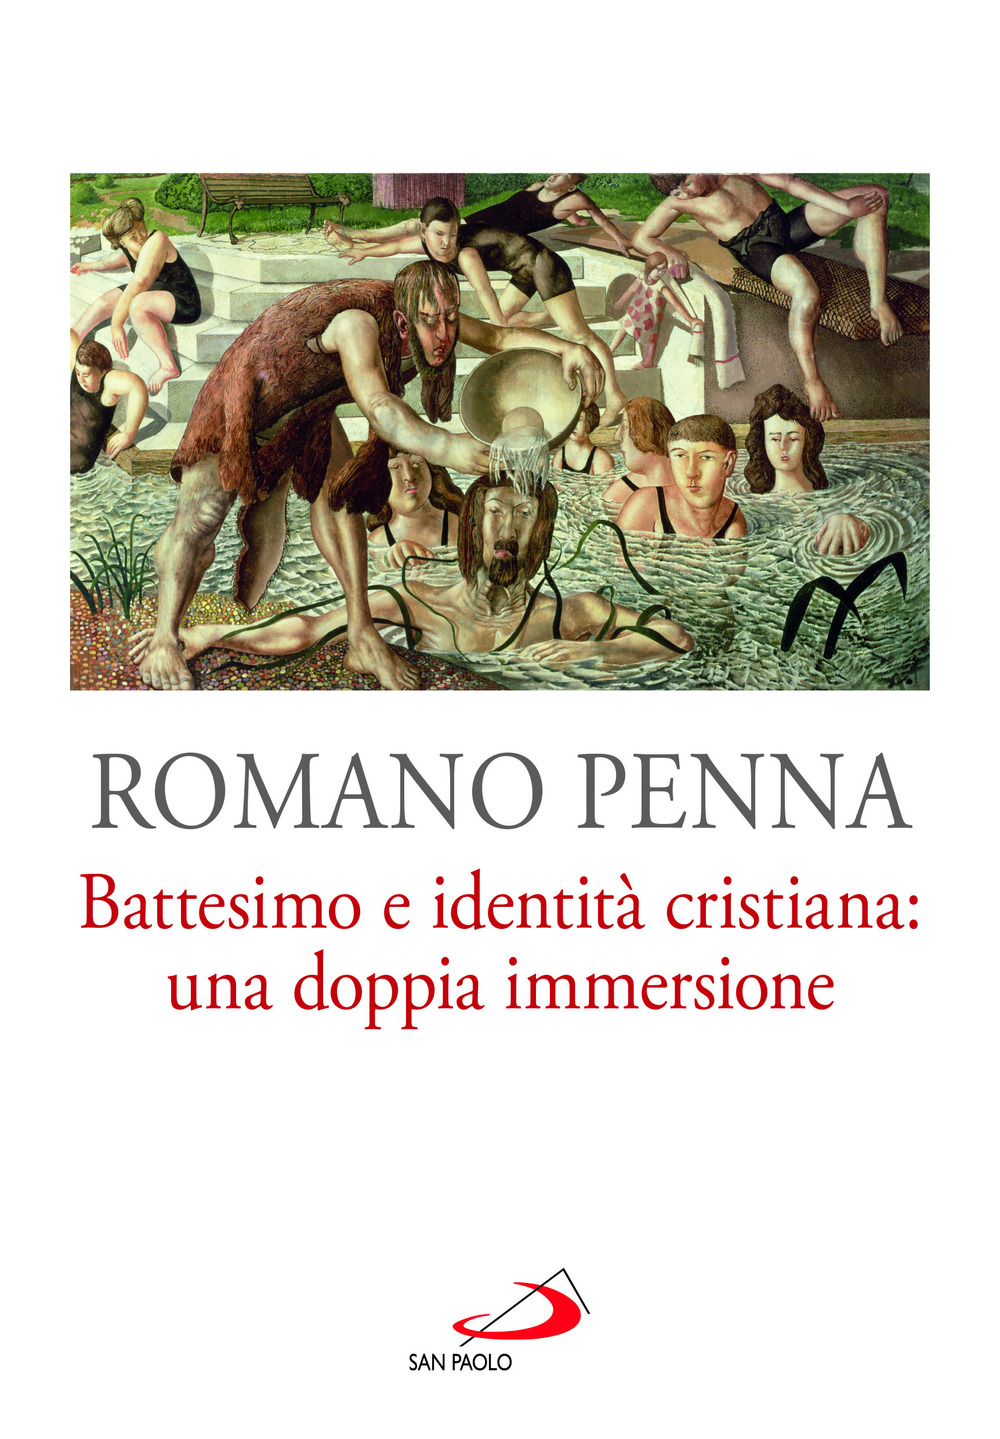 Libri Romano Penna - Battesimo E Identita Cristiana: Una Doppia Immersione NUOVO SIGILLATO, EDIZIONE DEL 18/02/2022 SUBITO DISPONIBILE